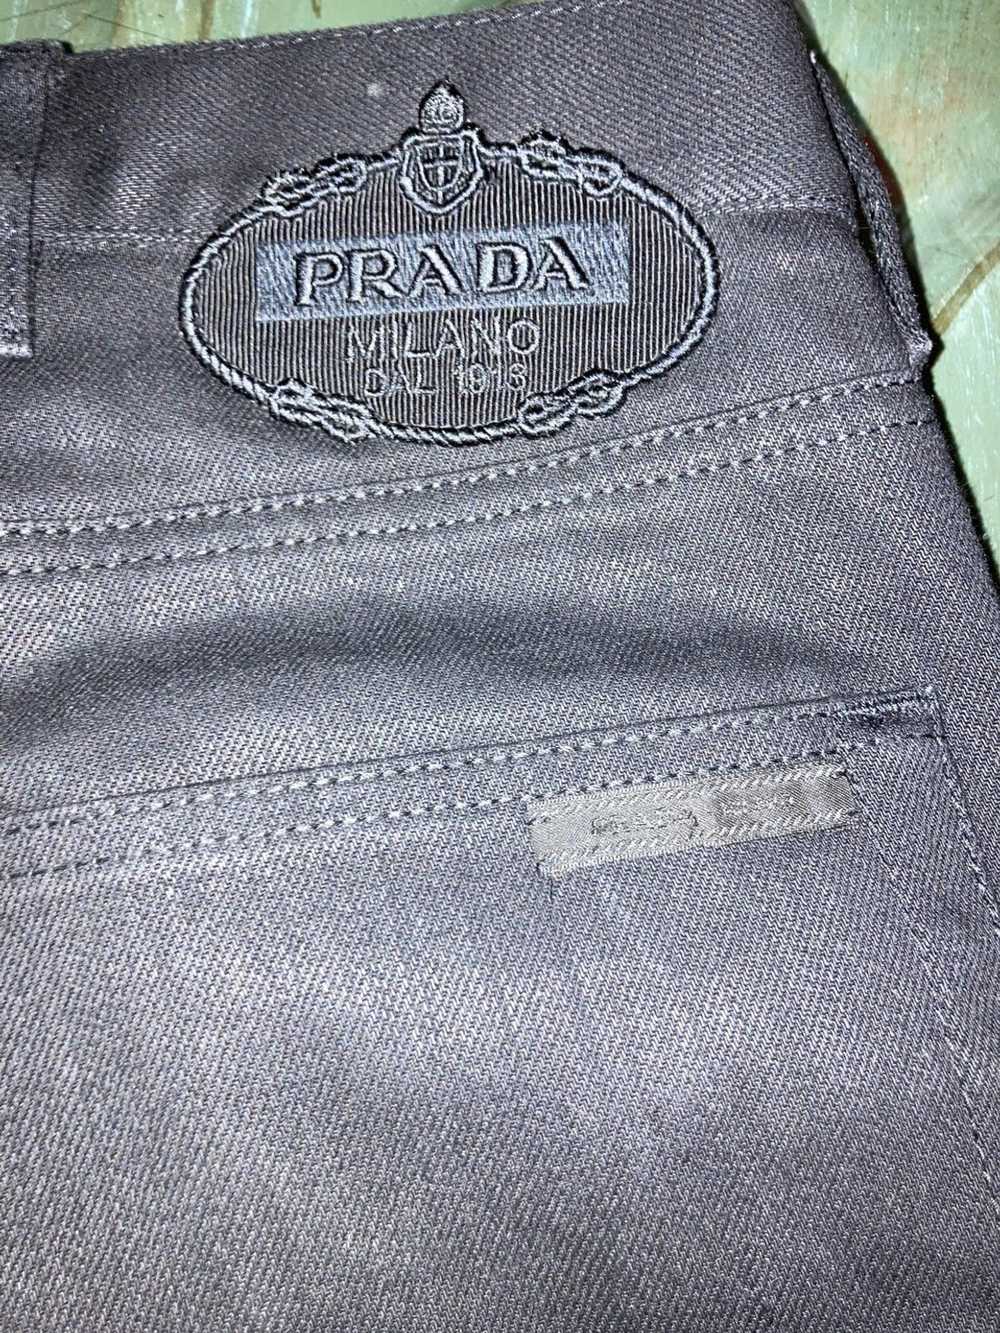 Prada Prada black pants - image 4